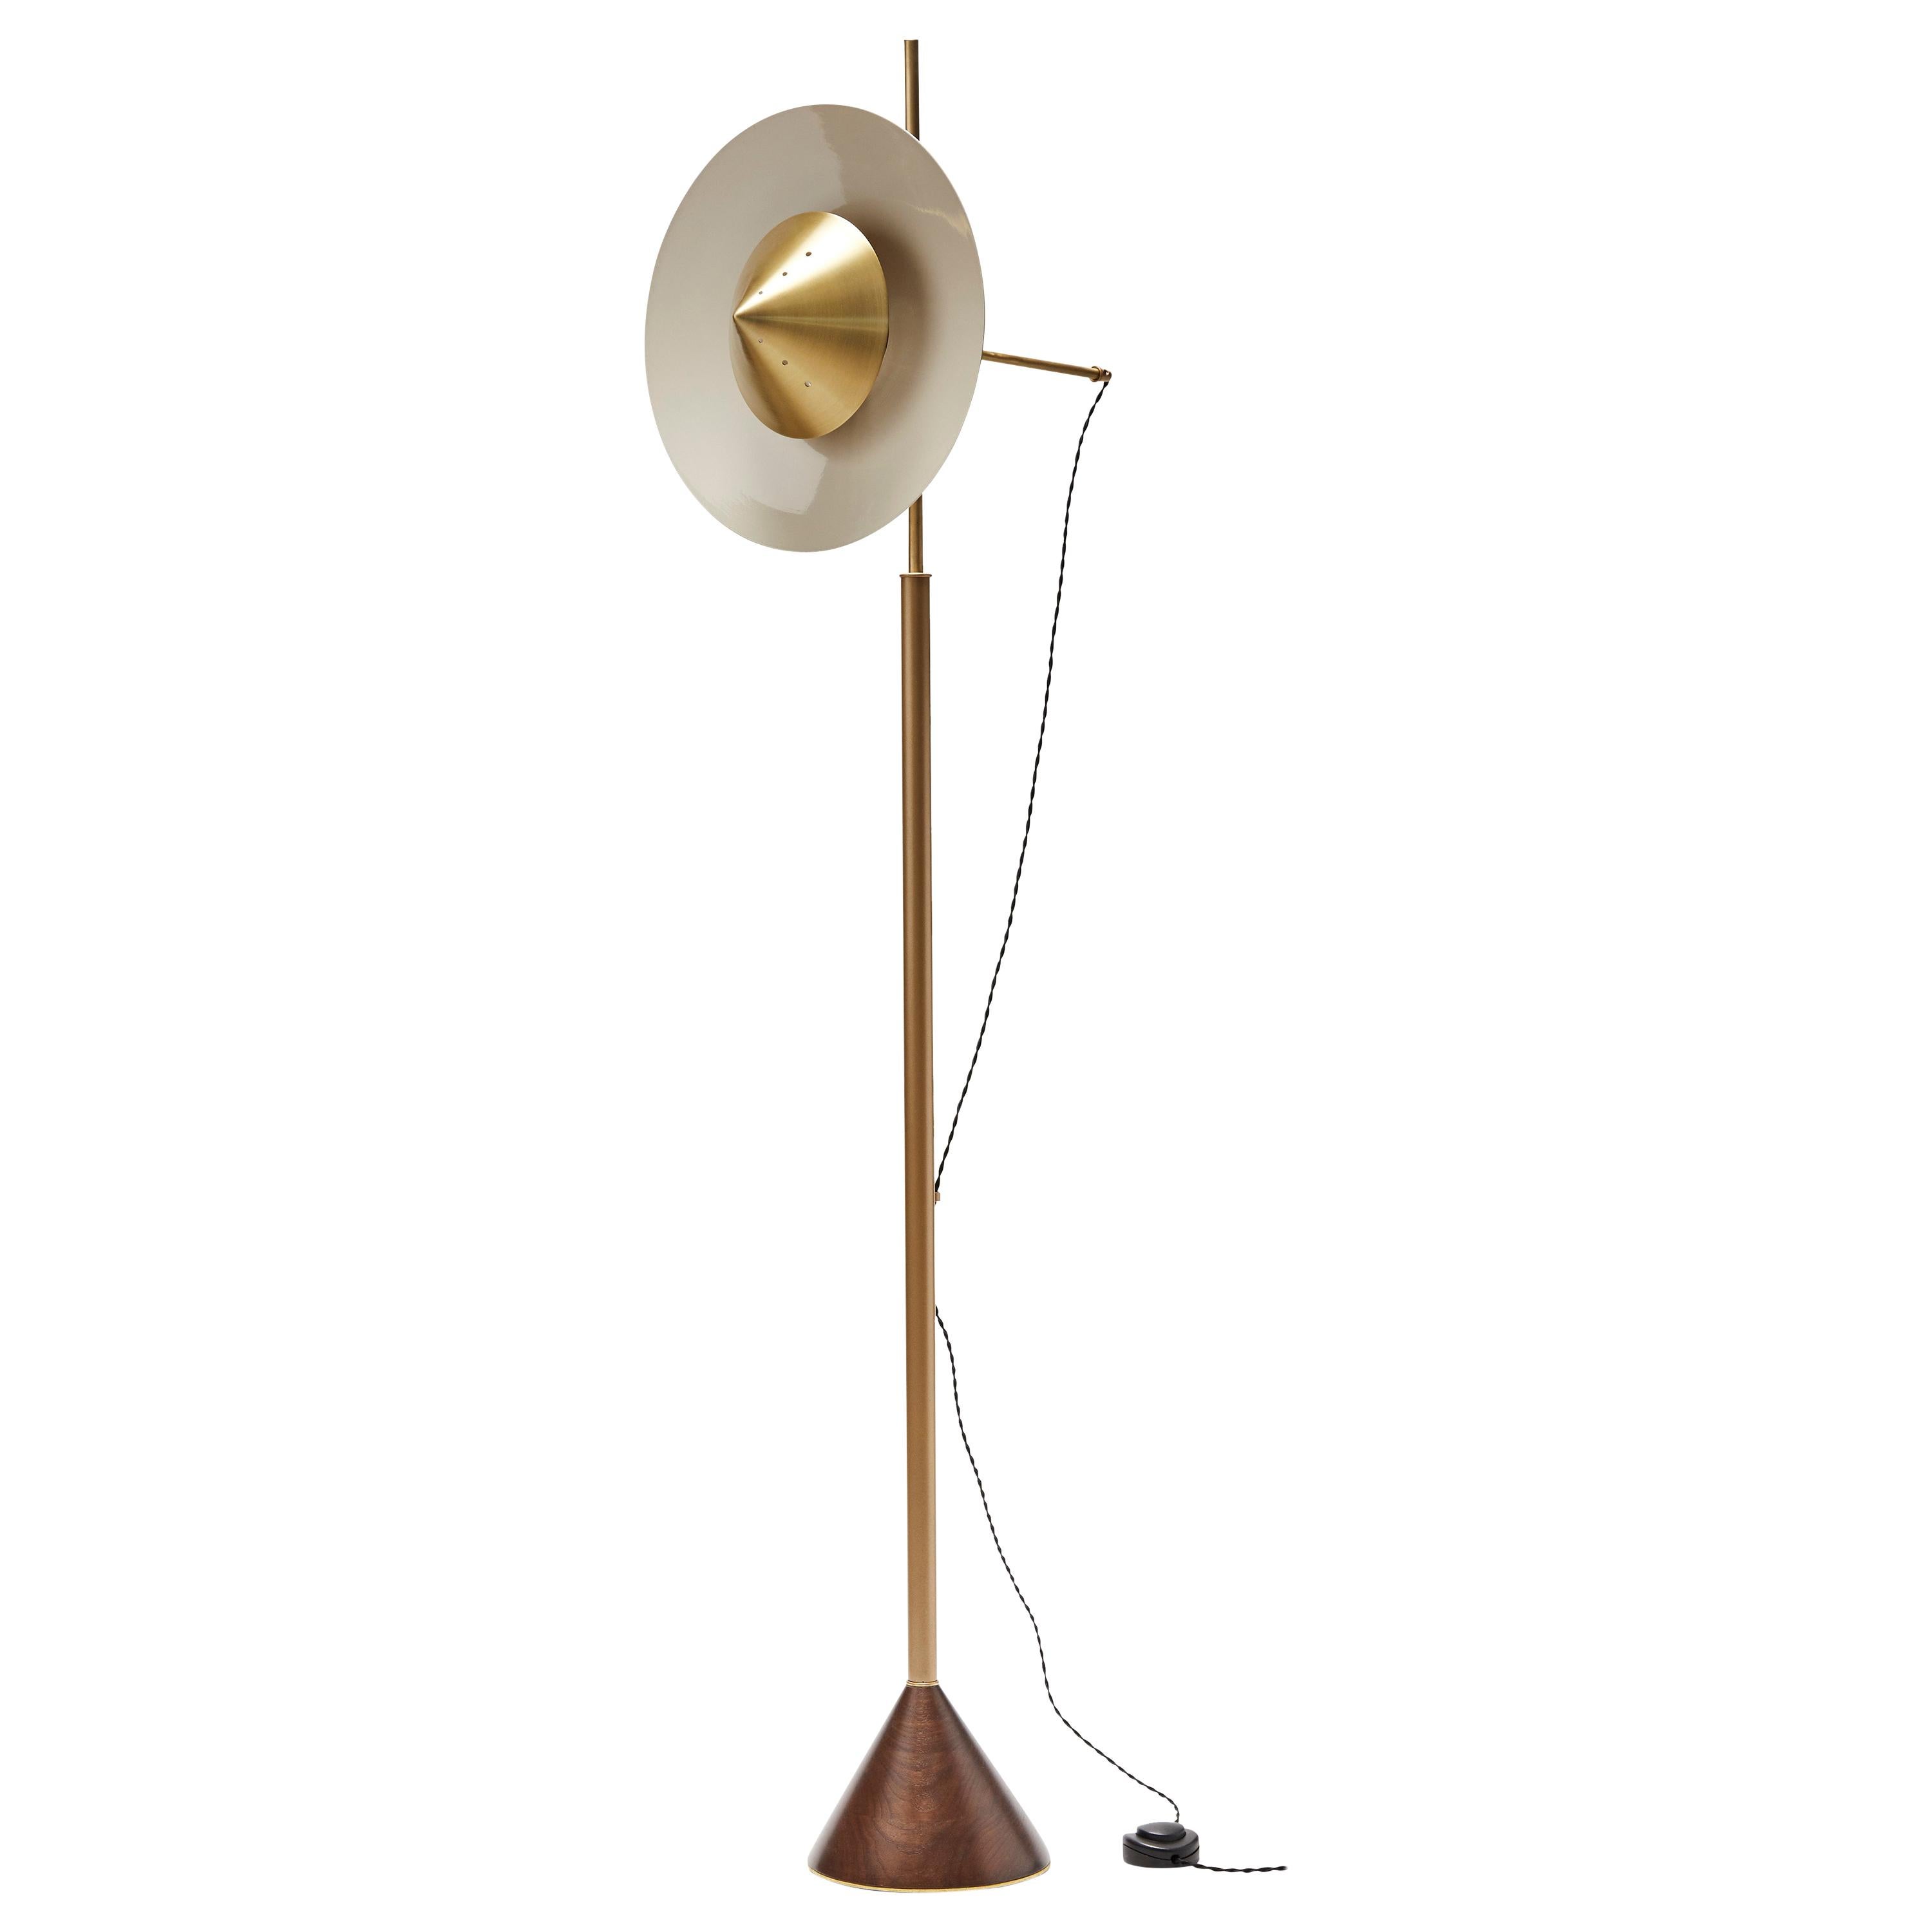 Pruckel Floor Lamp by Lawson-Fenning